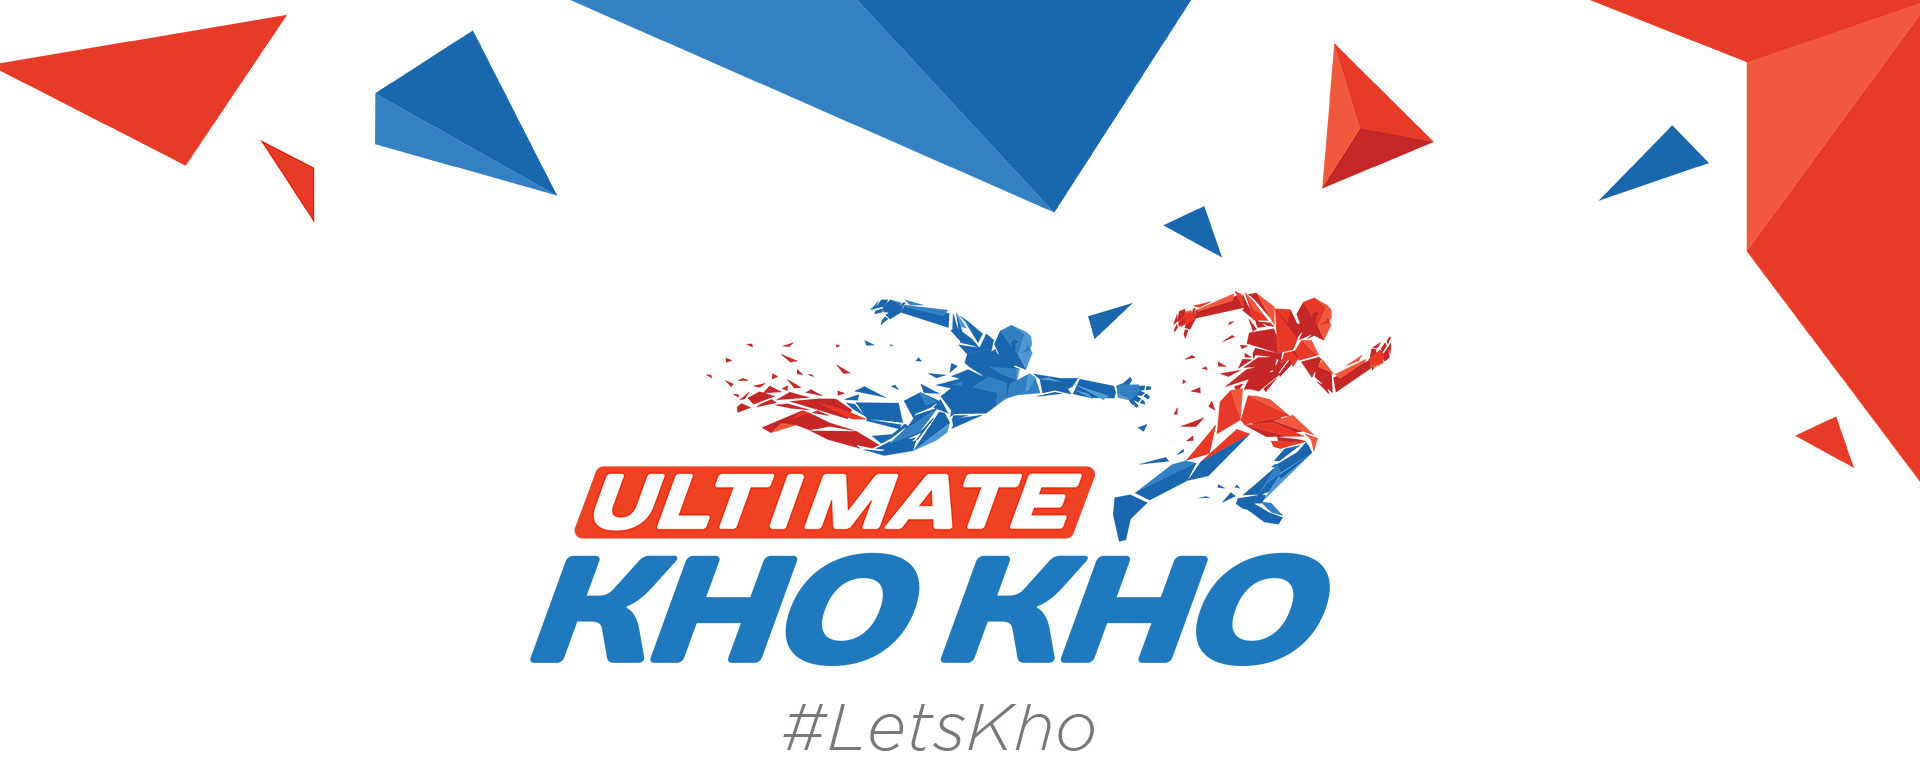 Ultimate Kho Kho: Odisha government joins Ultimate Kho Kho bandwagon, buys fifth franchise in UKK 2022 after owning HIL franchise Kalinga Lancers